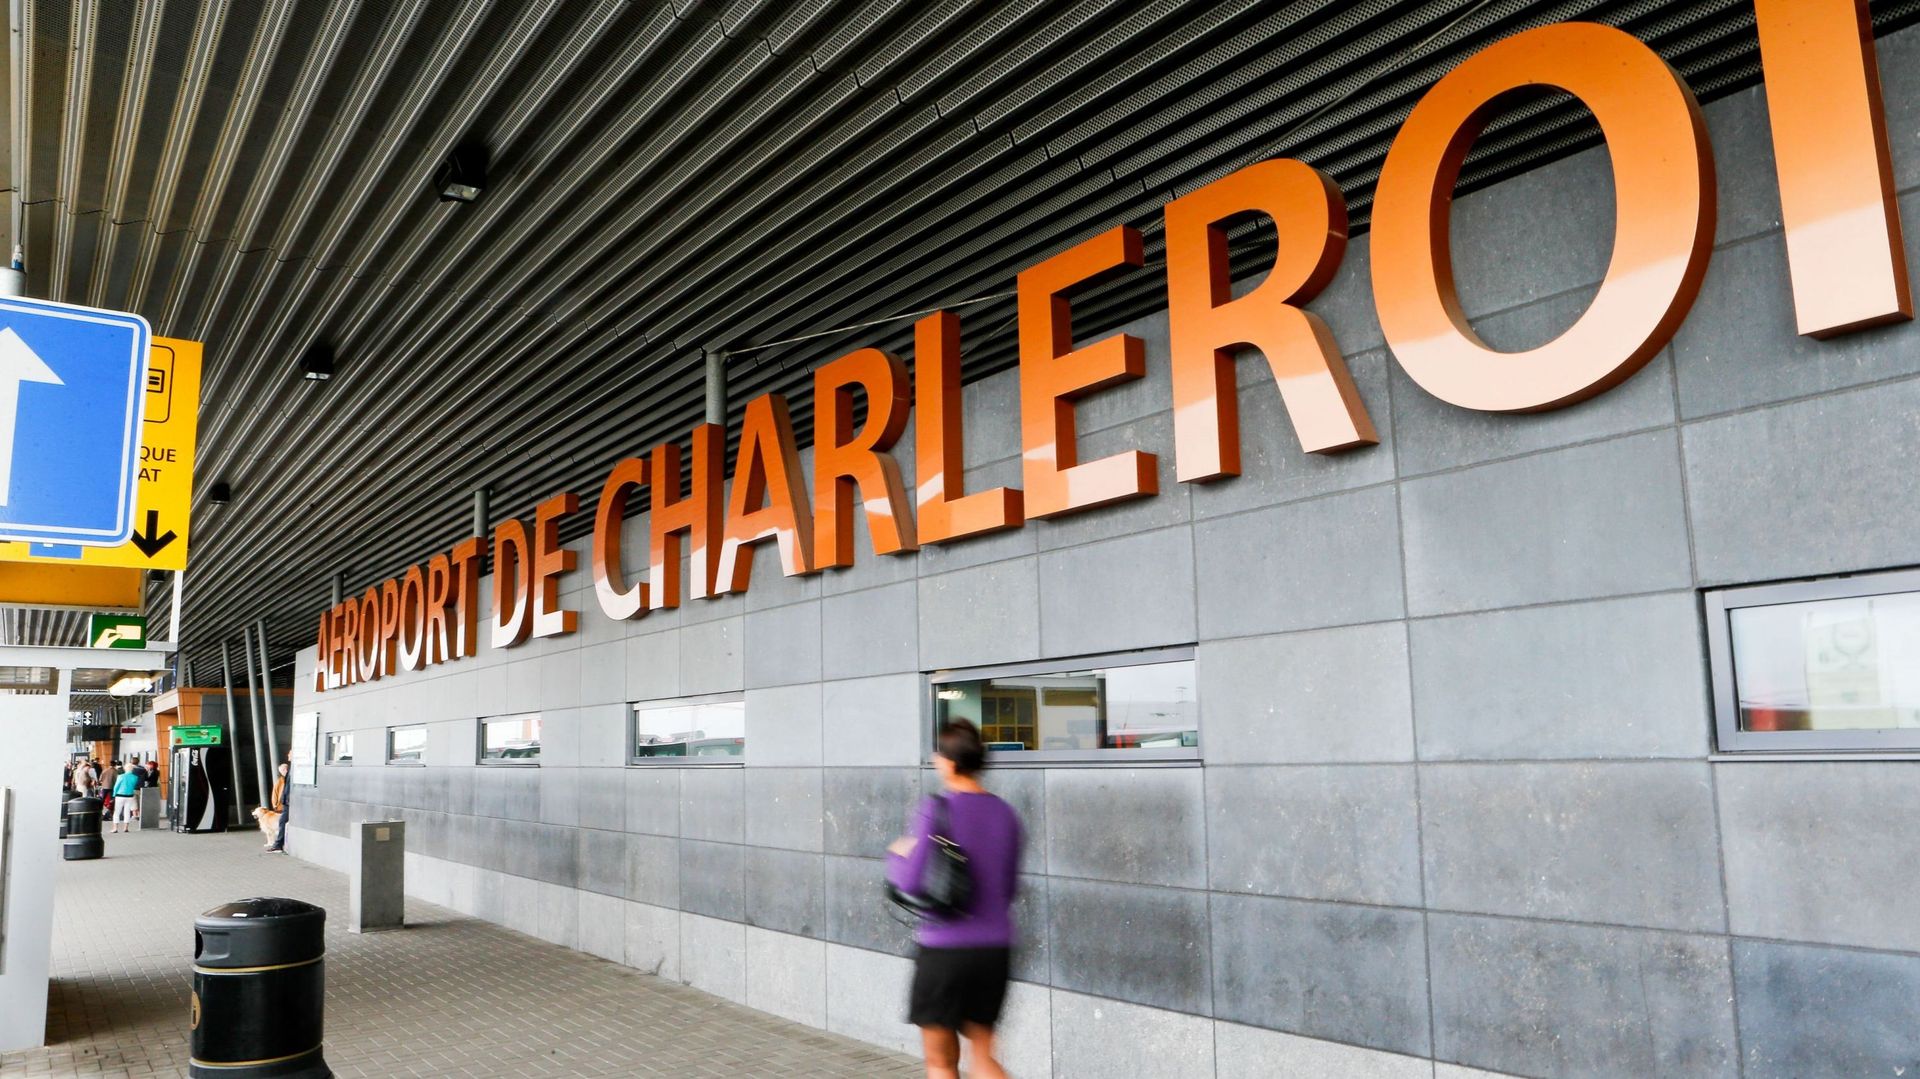 Aéroport de Charleroi : incendie sans gravité au sein du terminal 2 qui était fermé au public